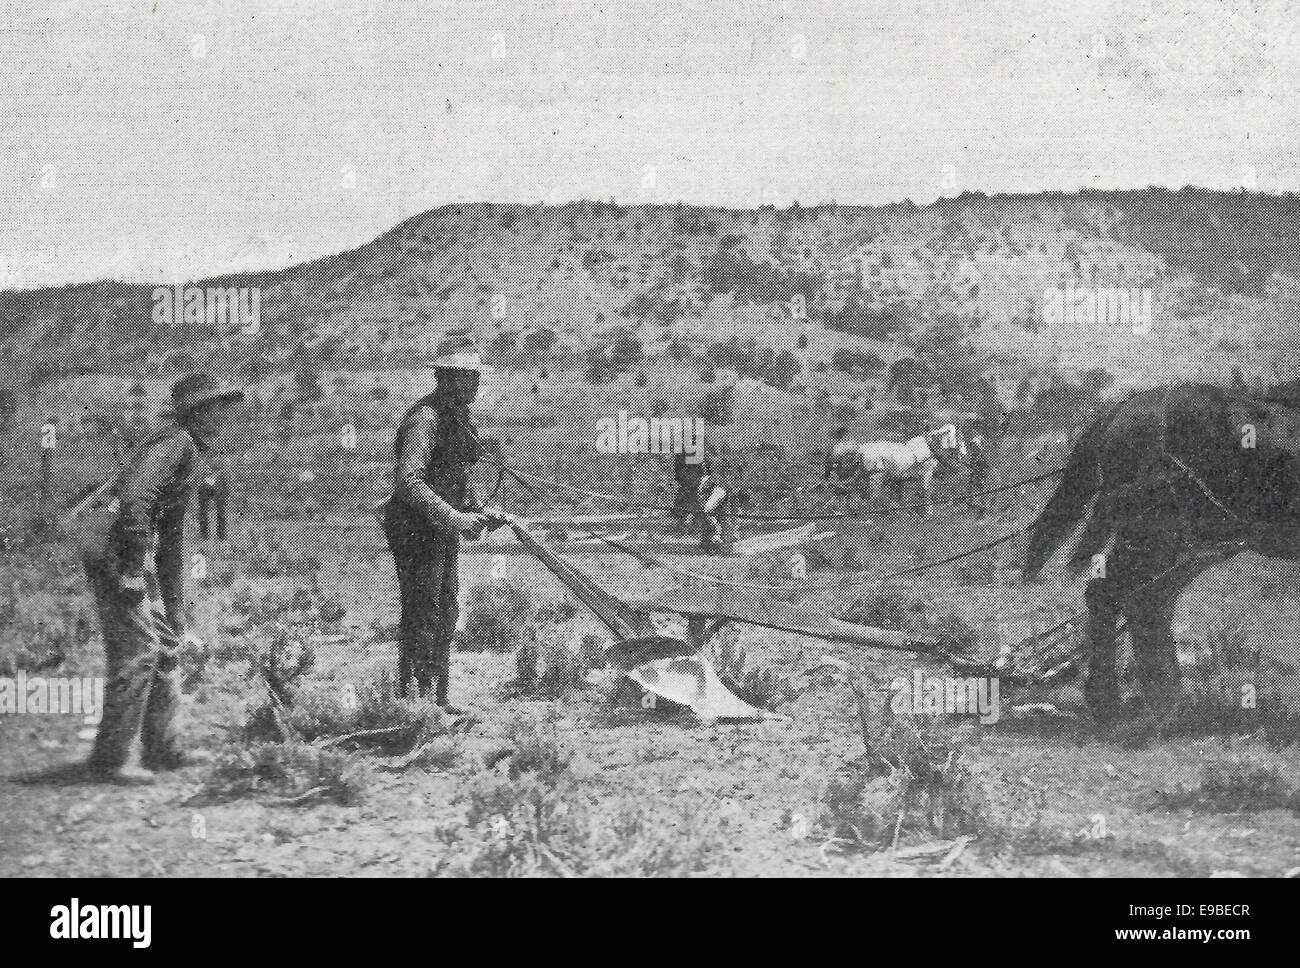 Sin perder el tiempo - edificio de colonos y arar a las 12:02 (2 minutos después de la apertura de la reclamación) Reserva de Ute en el Sur de Colorado a la liquidación, 1899 Foto de stock